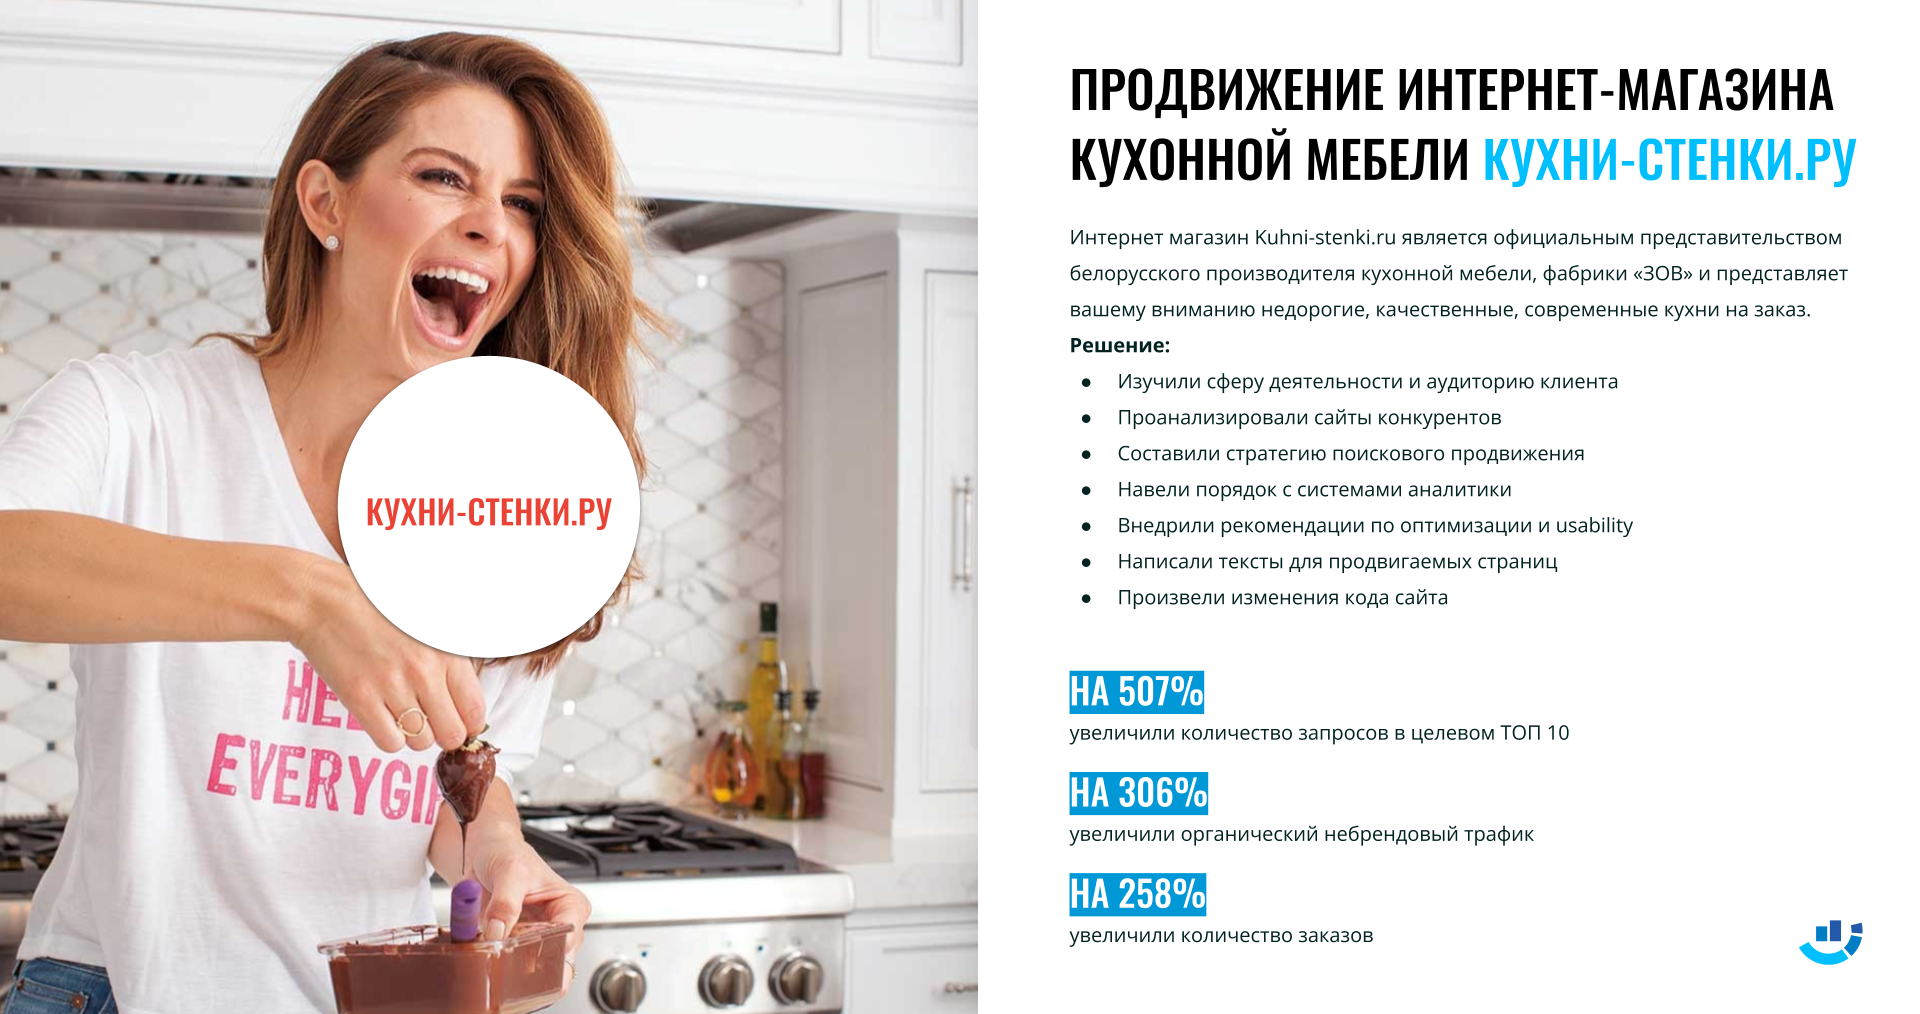 [Кейс] Мебель для кухни. На 258% подняли заказы для белорусской мебели. Комплексное продвижение интернет-магазина кухонь | белорусская_мебель, кейс, комплексное_продвижение, кухни-стенки, магазин_мебели